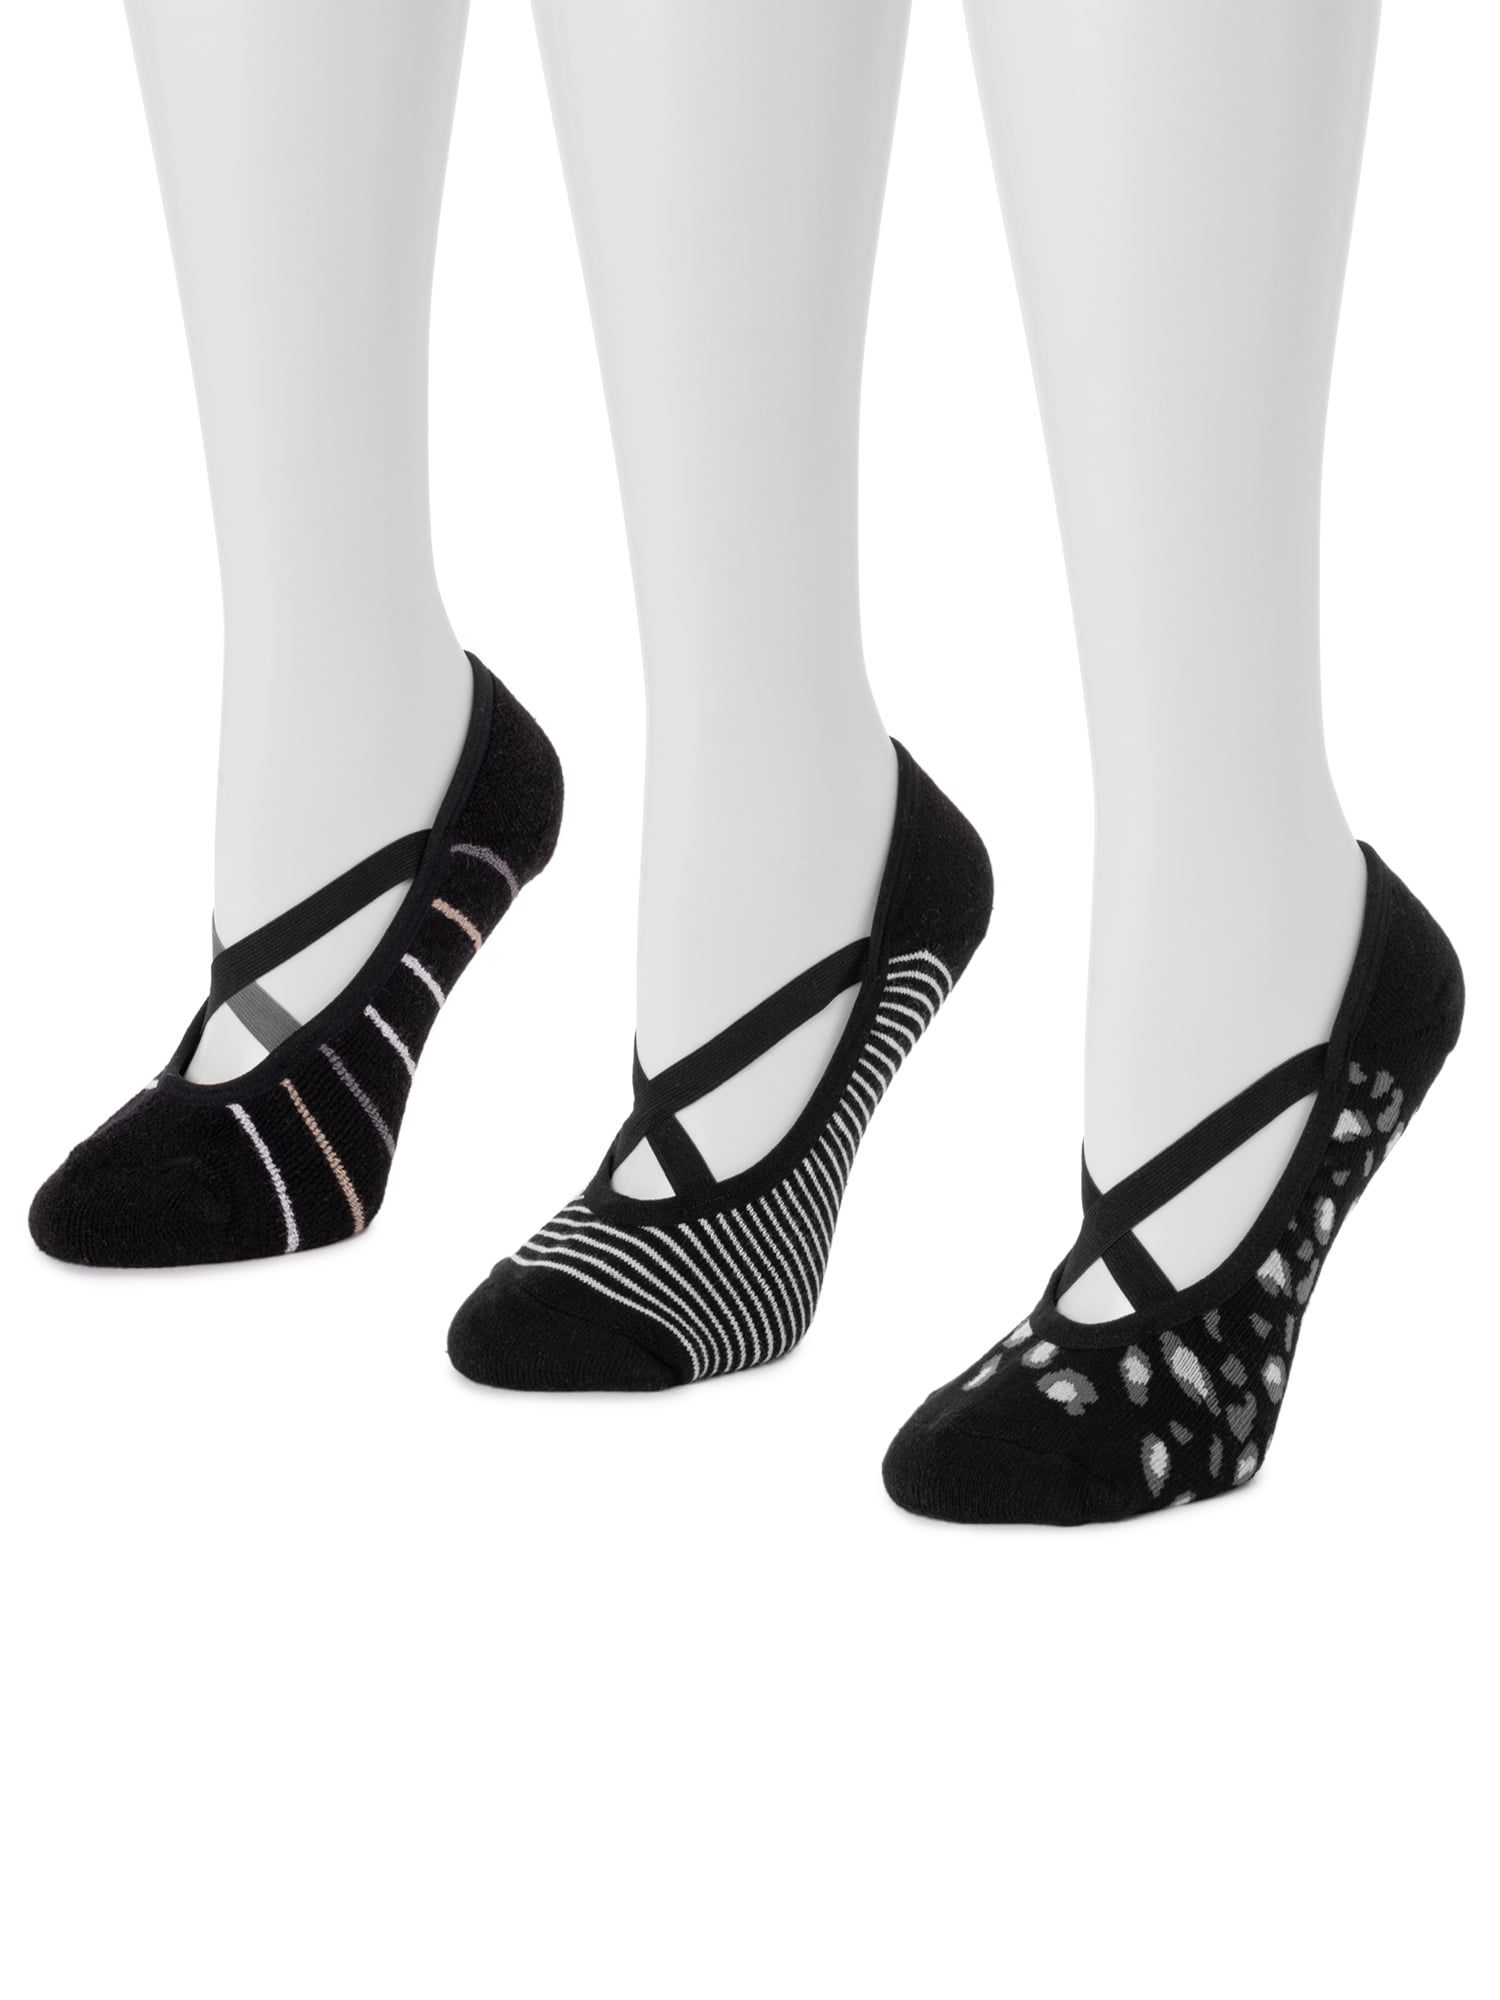 MUK LUKS Women's BALLERINA Socks, 6 pairs 